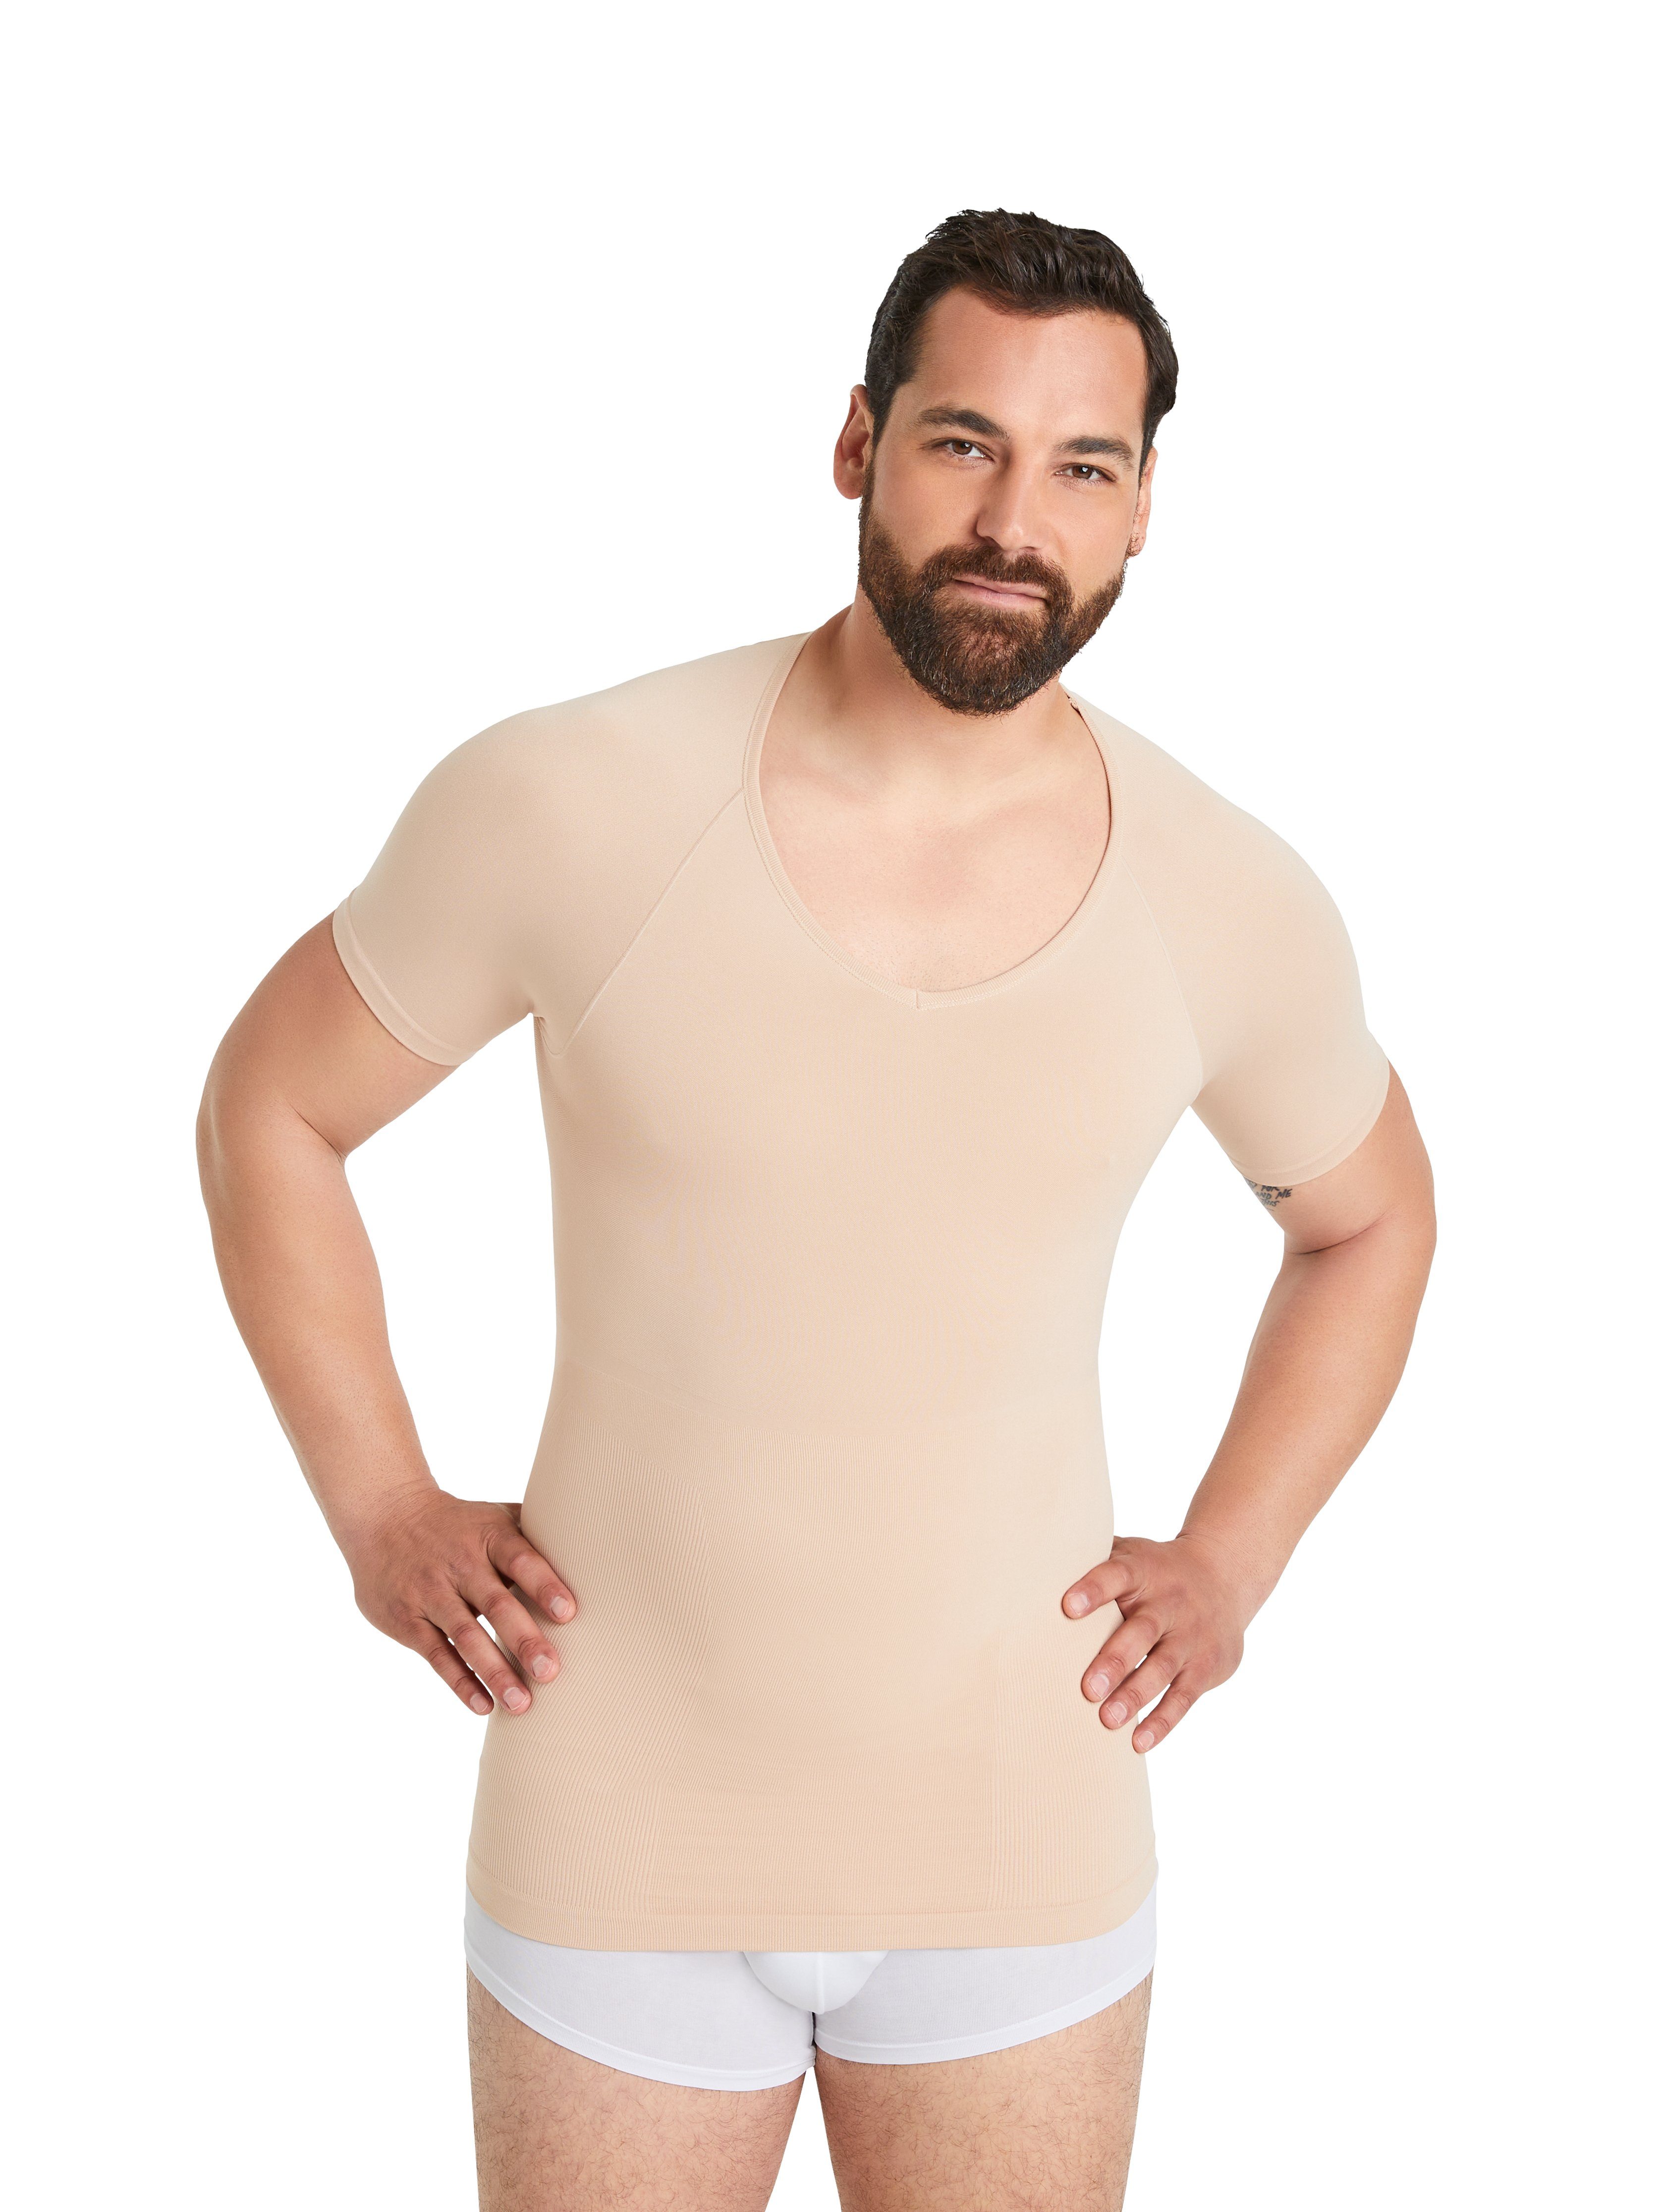 FINN Design Shapinghemd Seamless für Nähte Starker Männer Kompressions-Unterhemd Herren ohne Light-Beige Body-Shaper